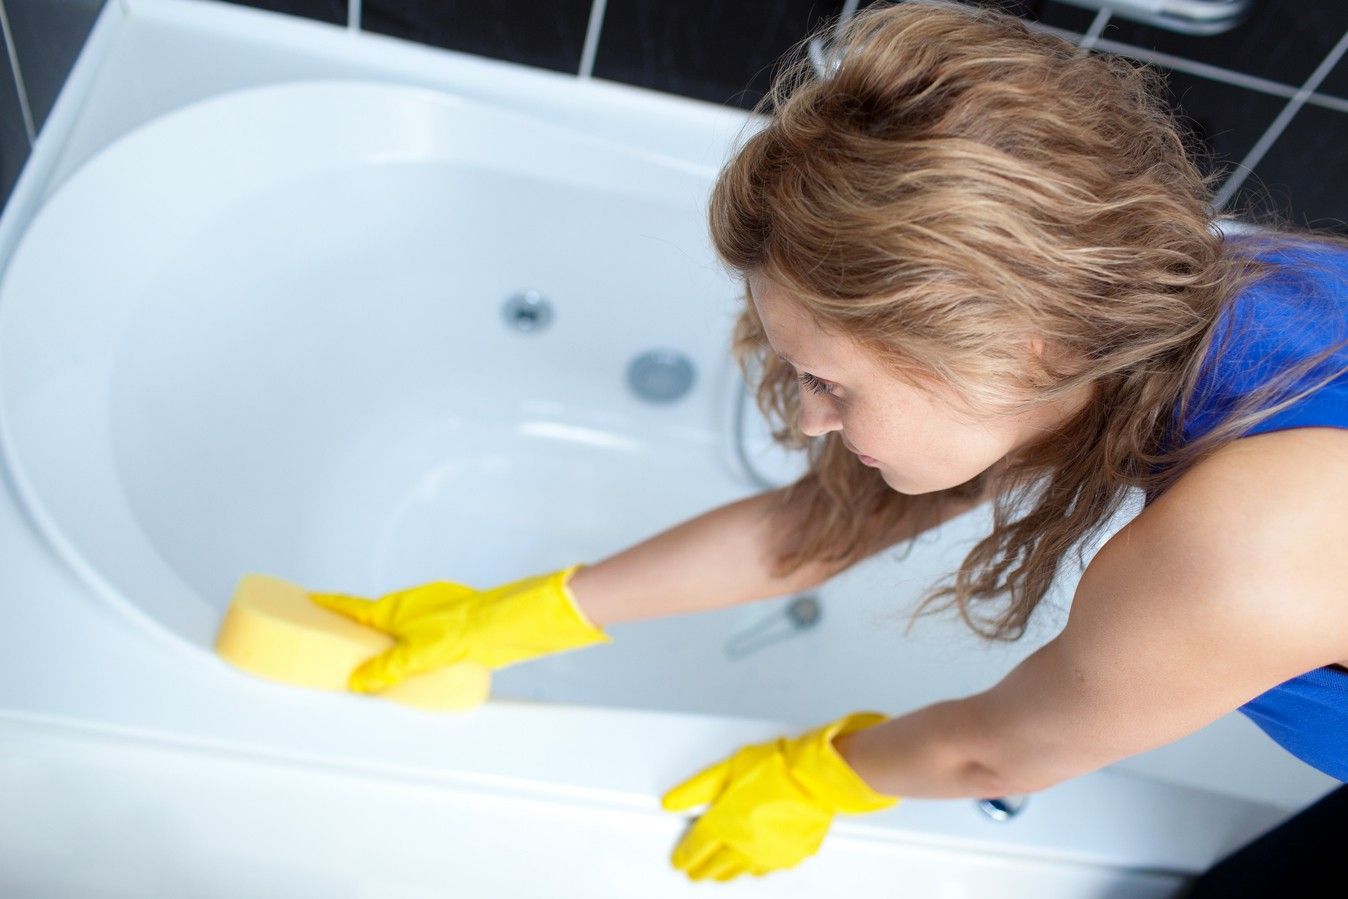 Нельзя чистить ванну различными металлическими скребками, очищайте губкой